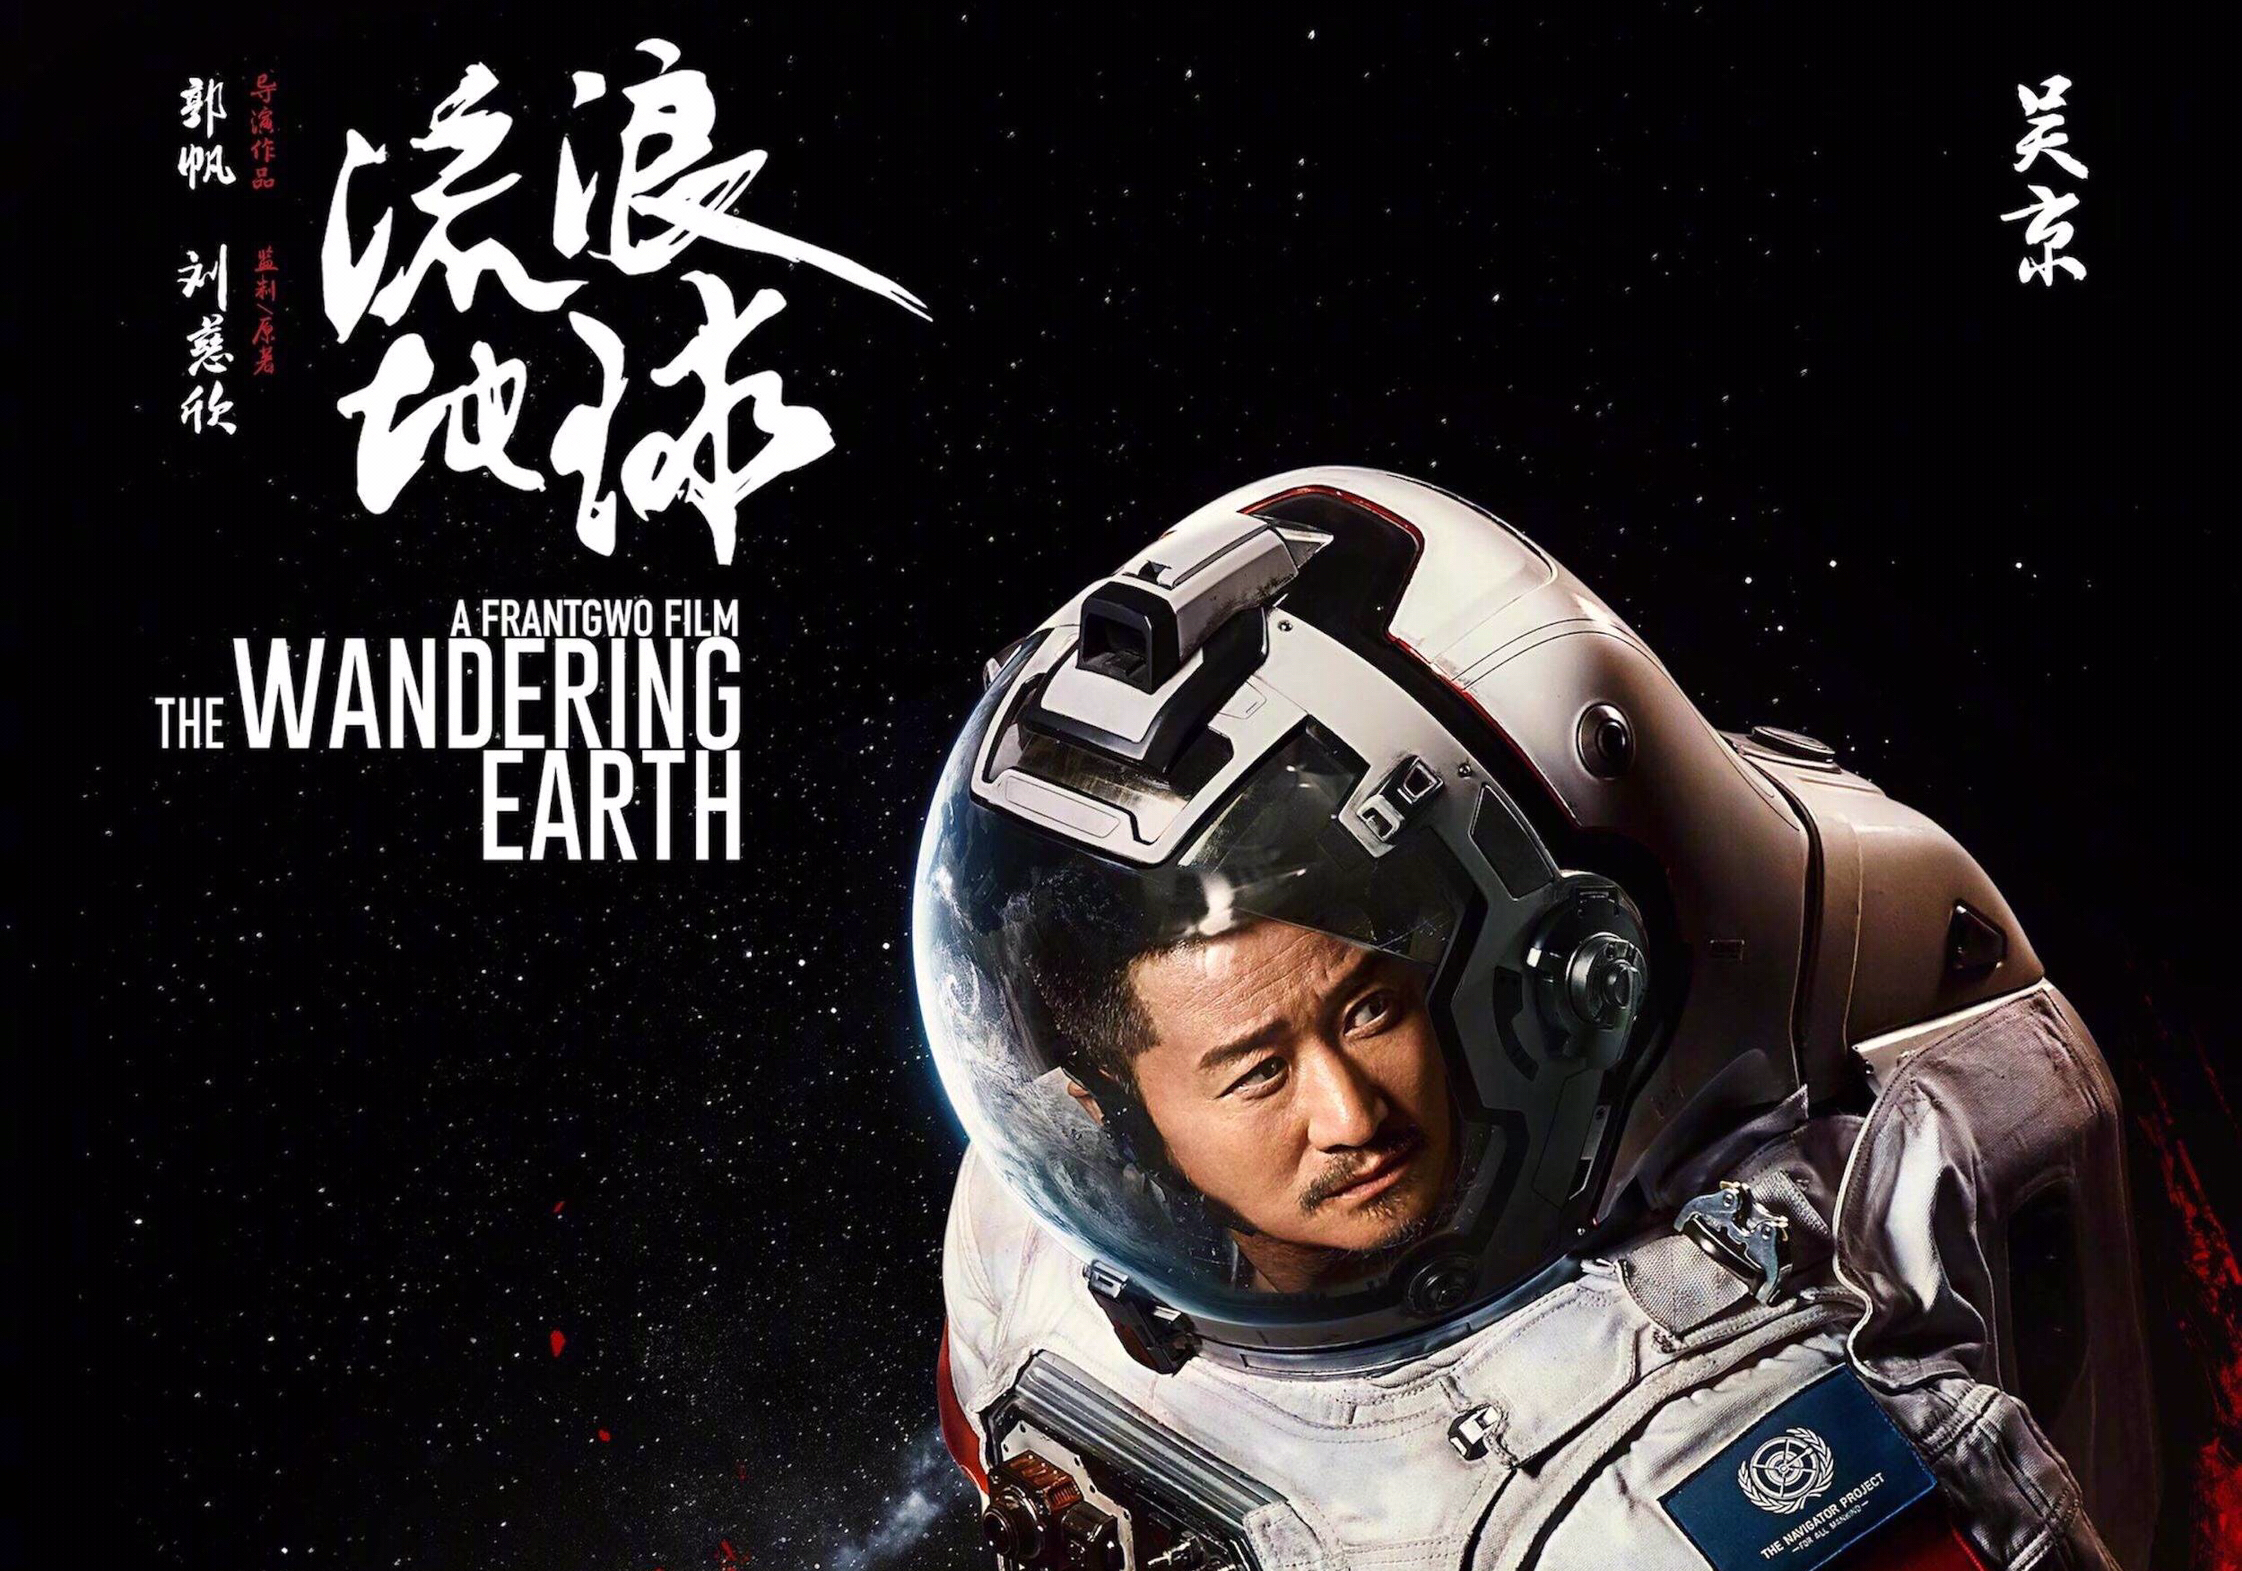 《流浪地球》中国首部科幻电影!十大看点你不容错过!